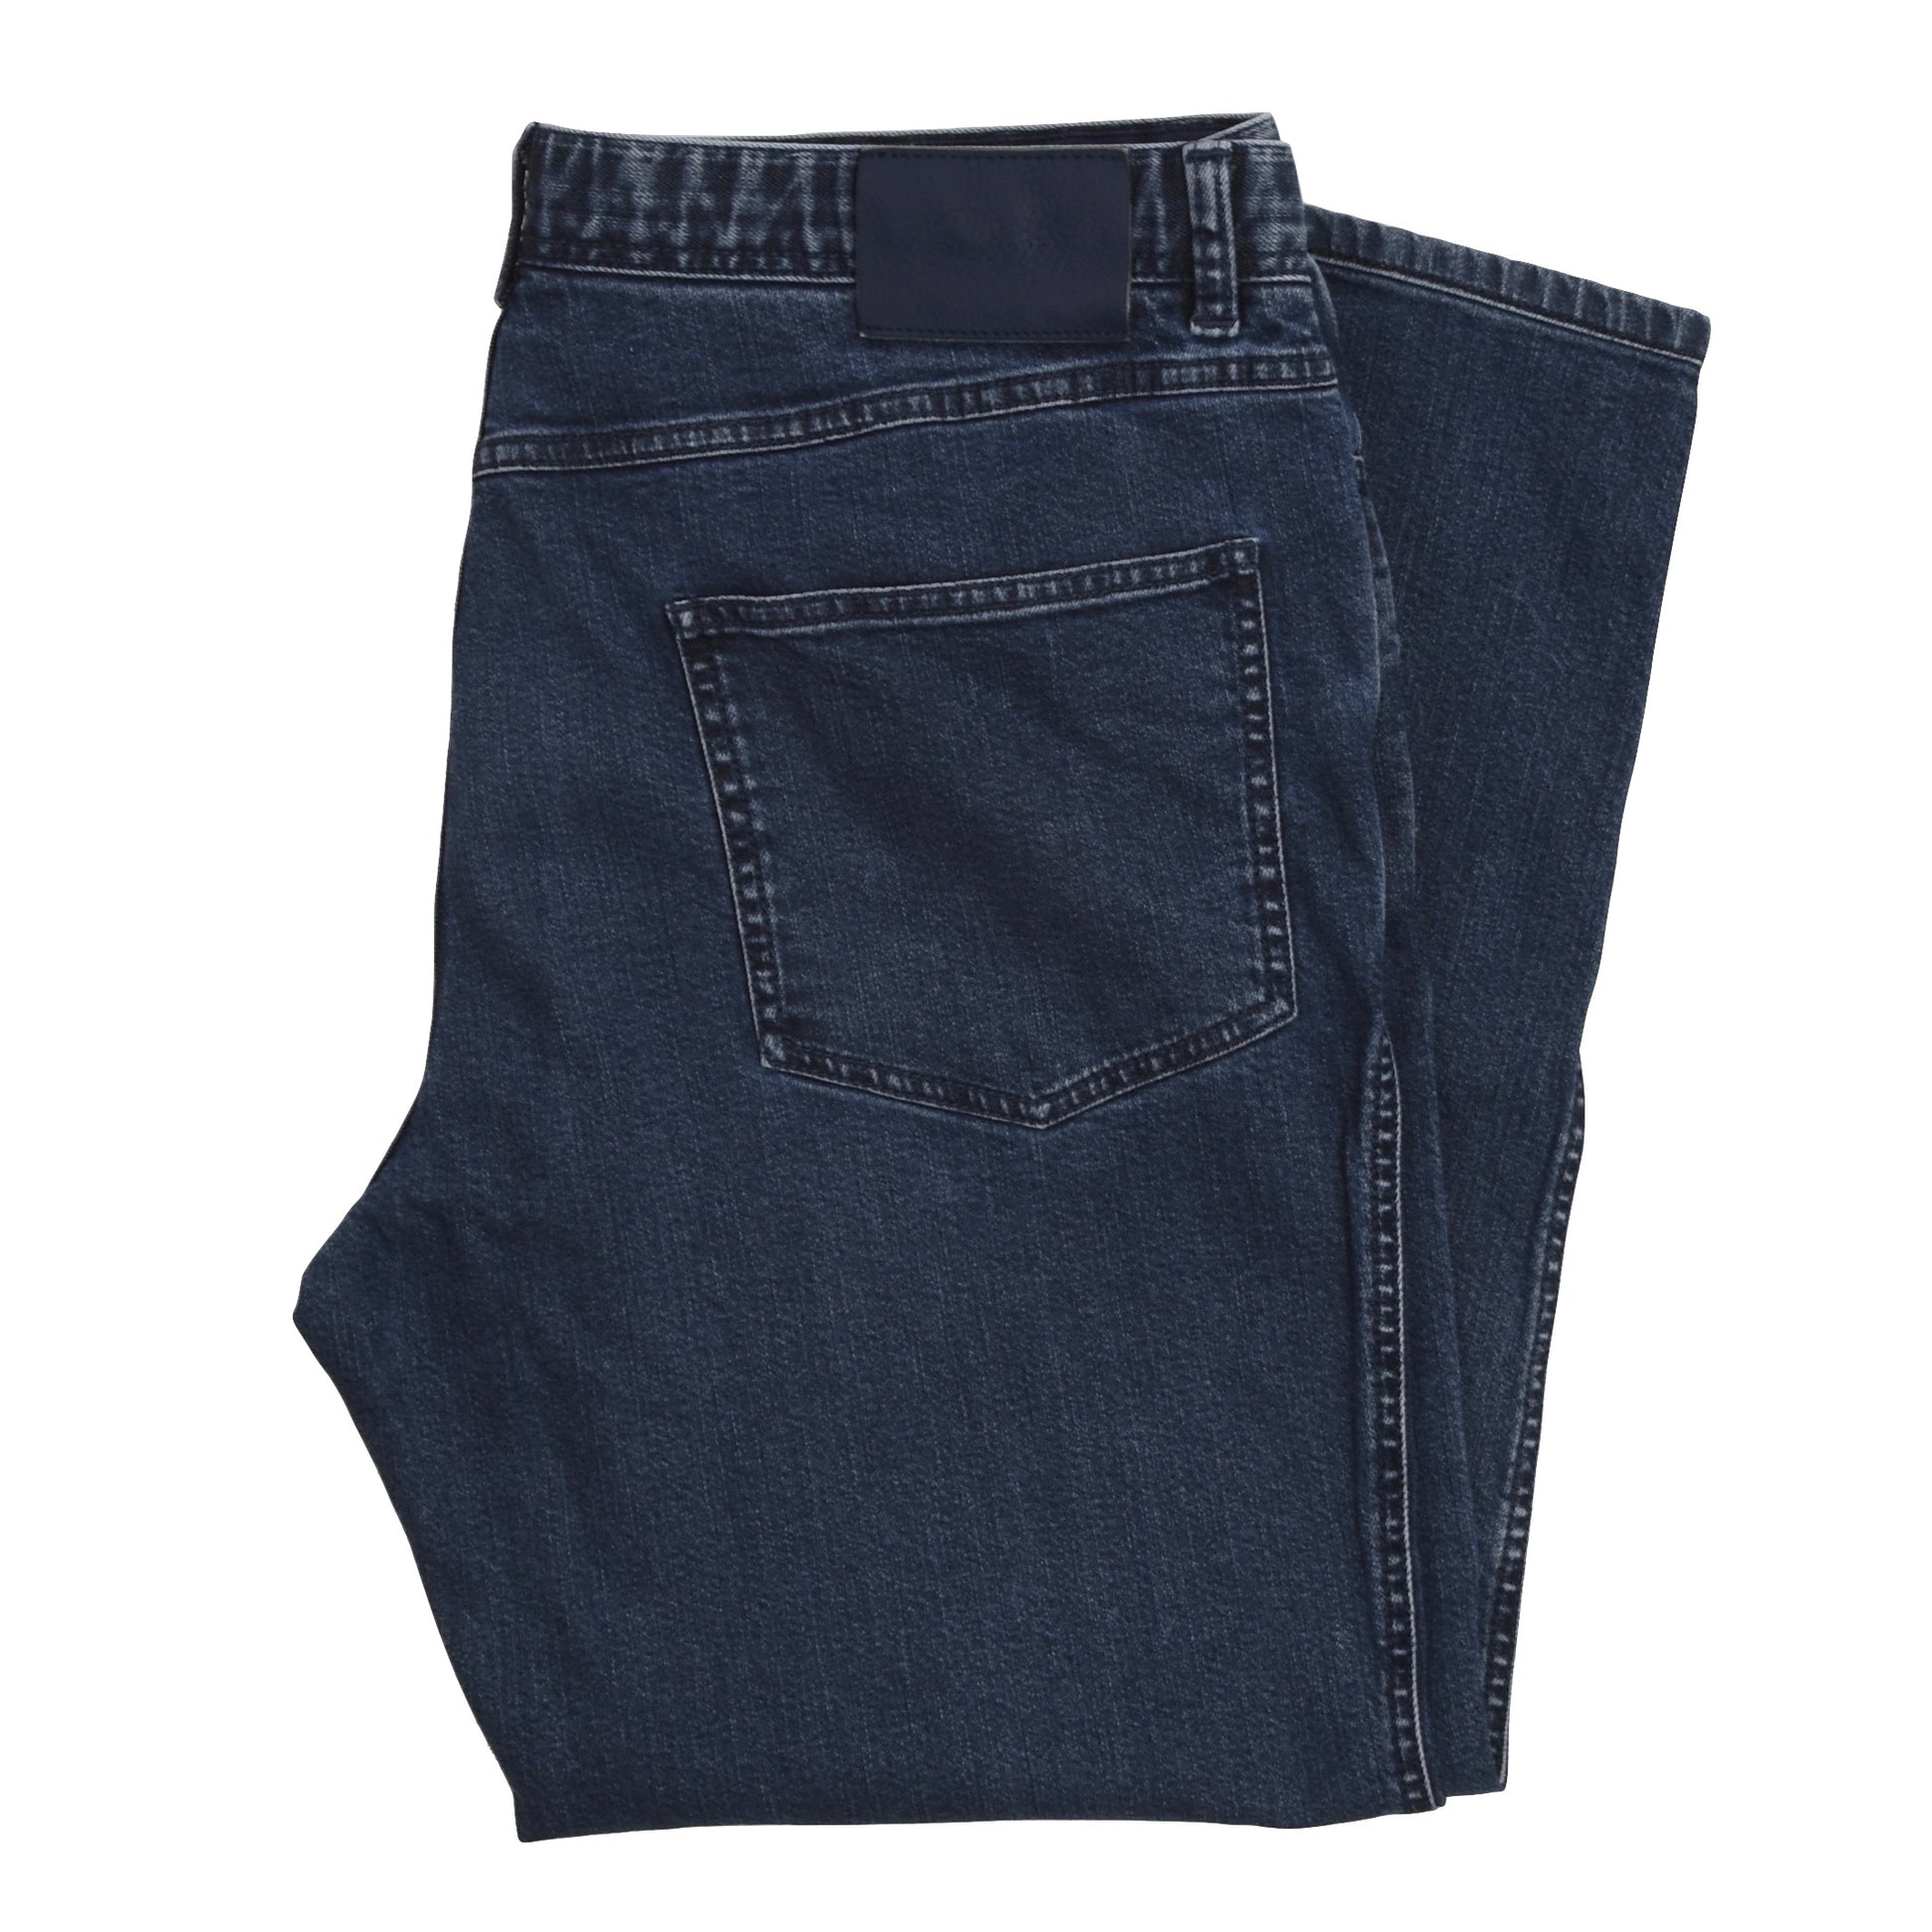 Brioni Jeans Size 40 Inch Waist - Blue – Leot James